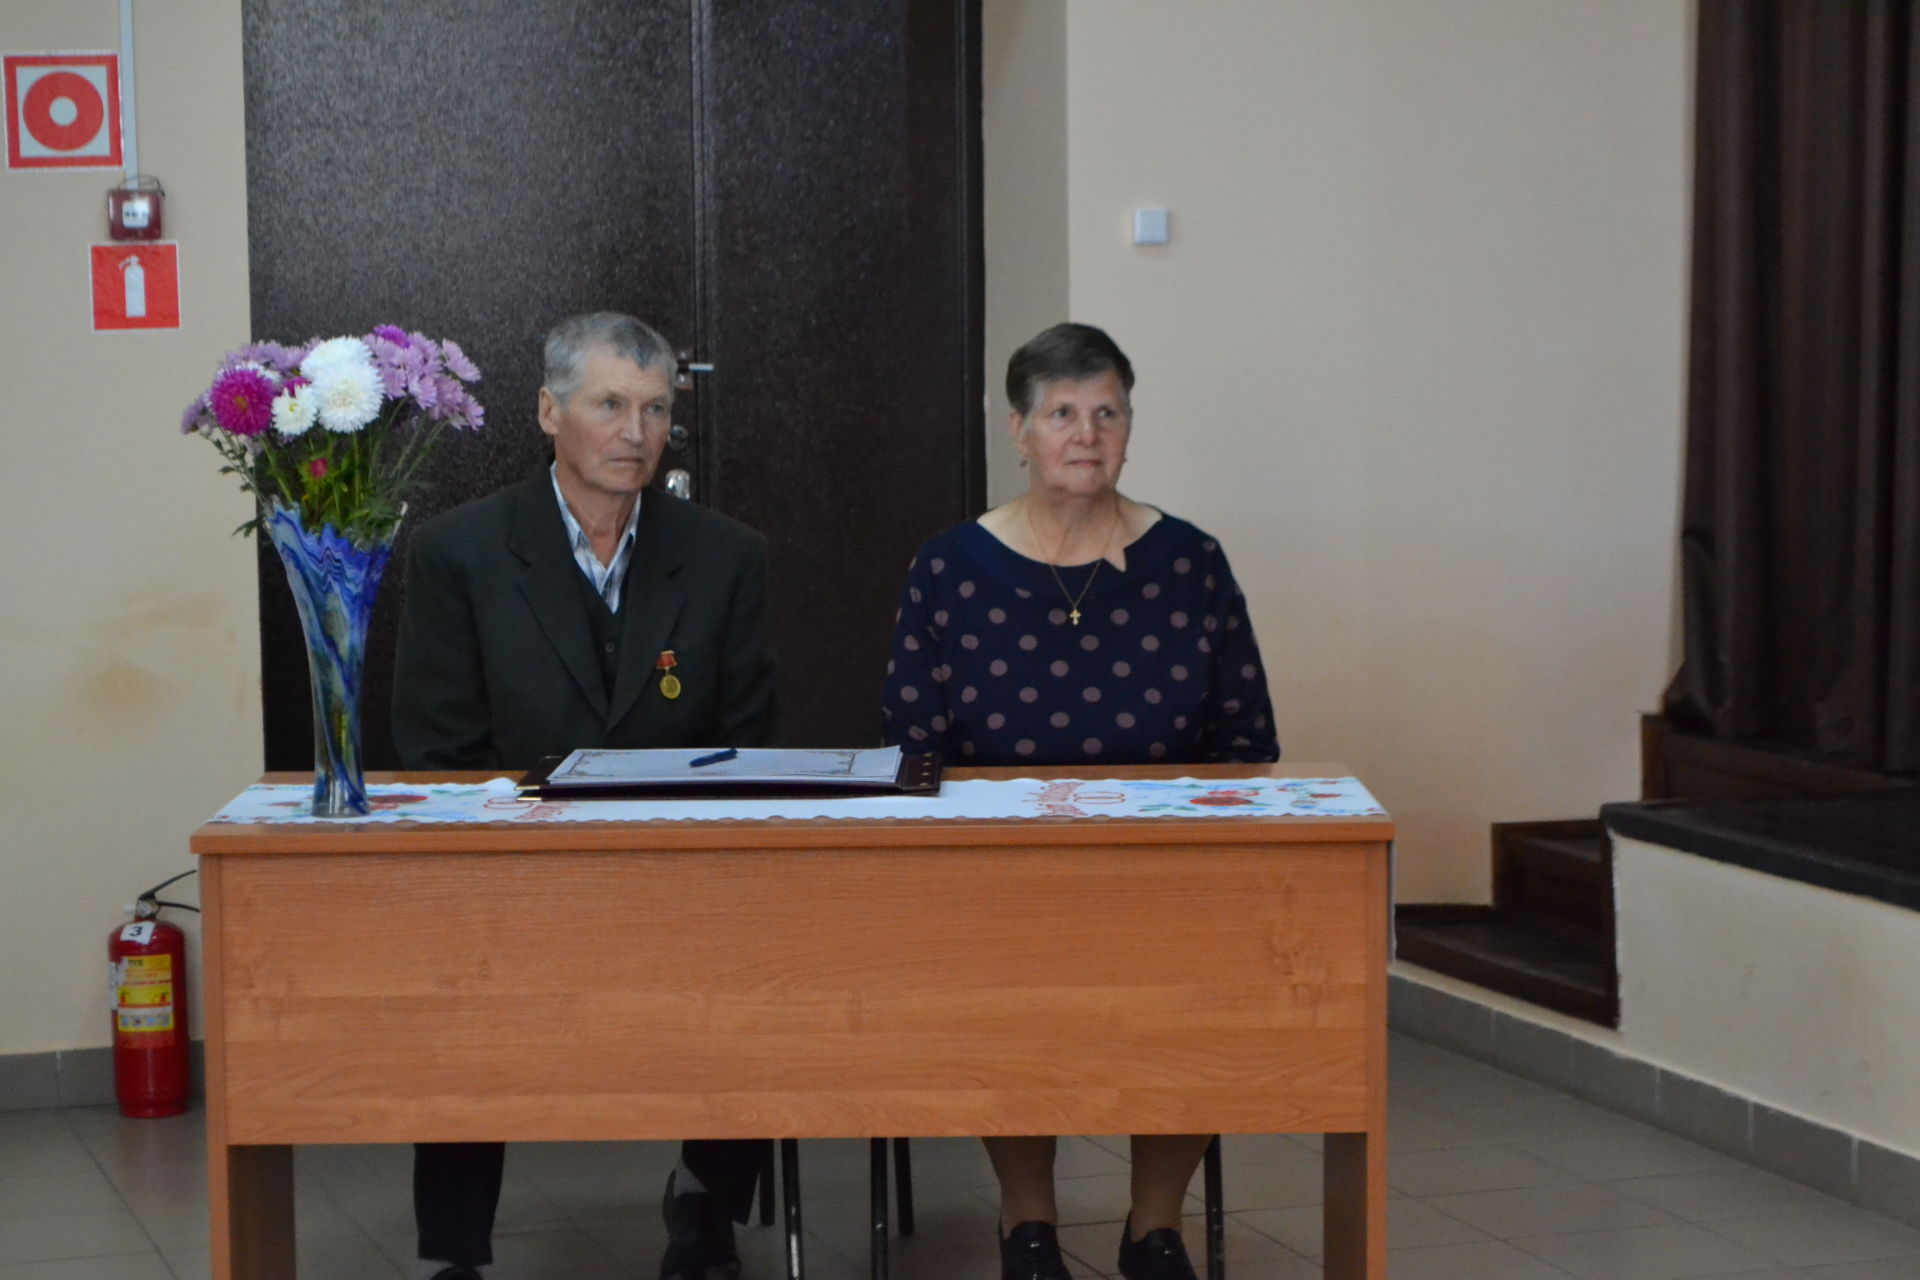 Любви и веры образец: в Макулове чествовали семью Цветковых, проживших в браке 50 лет